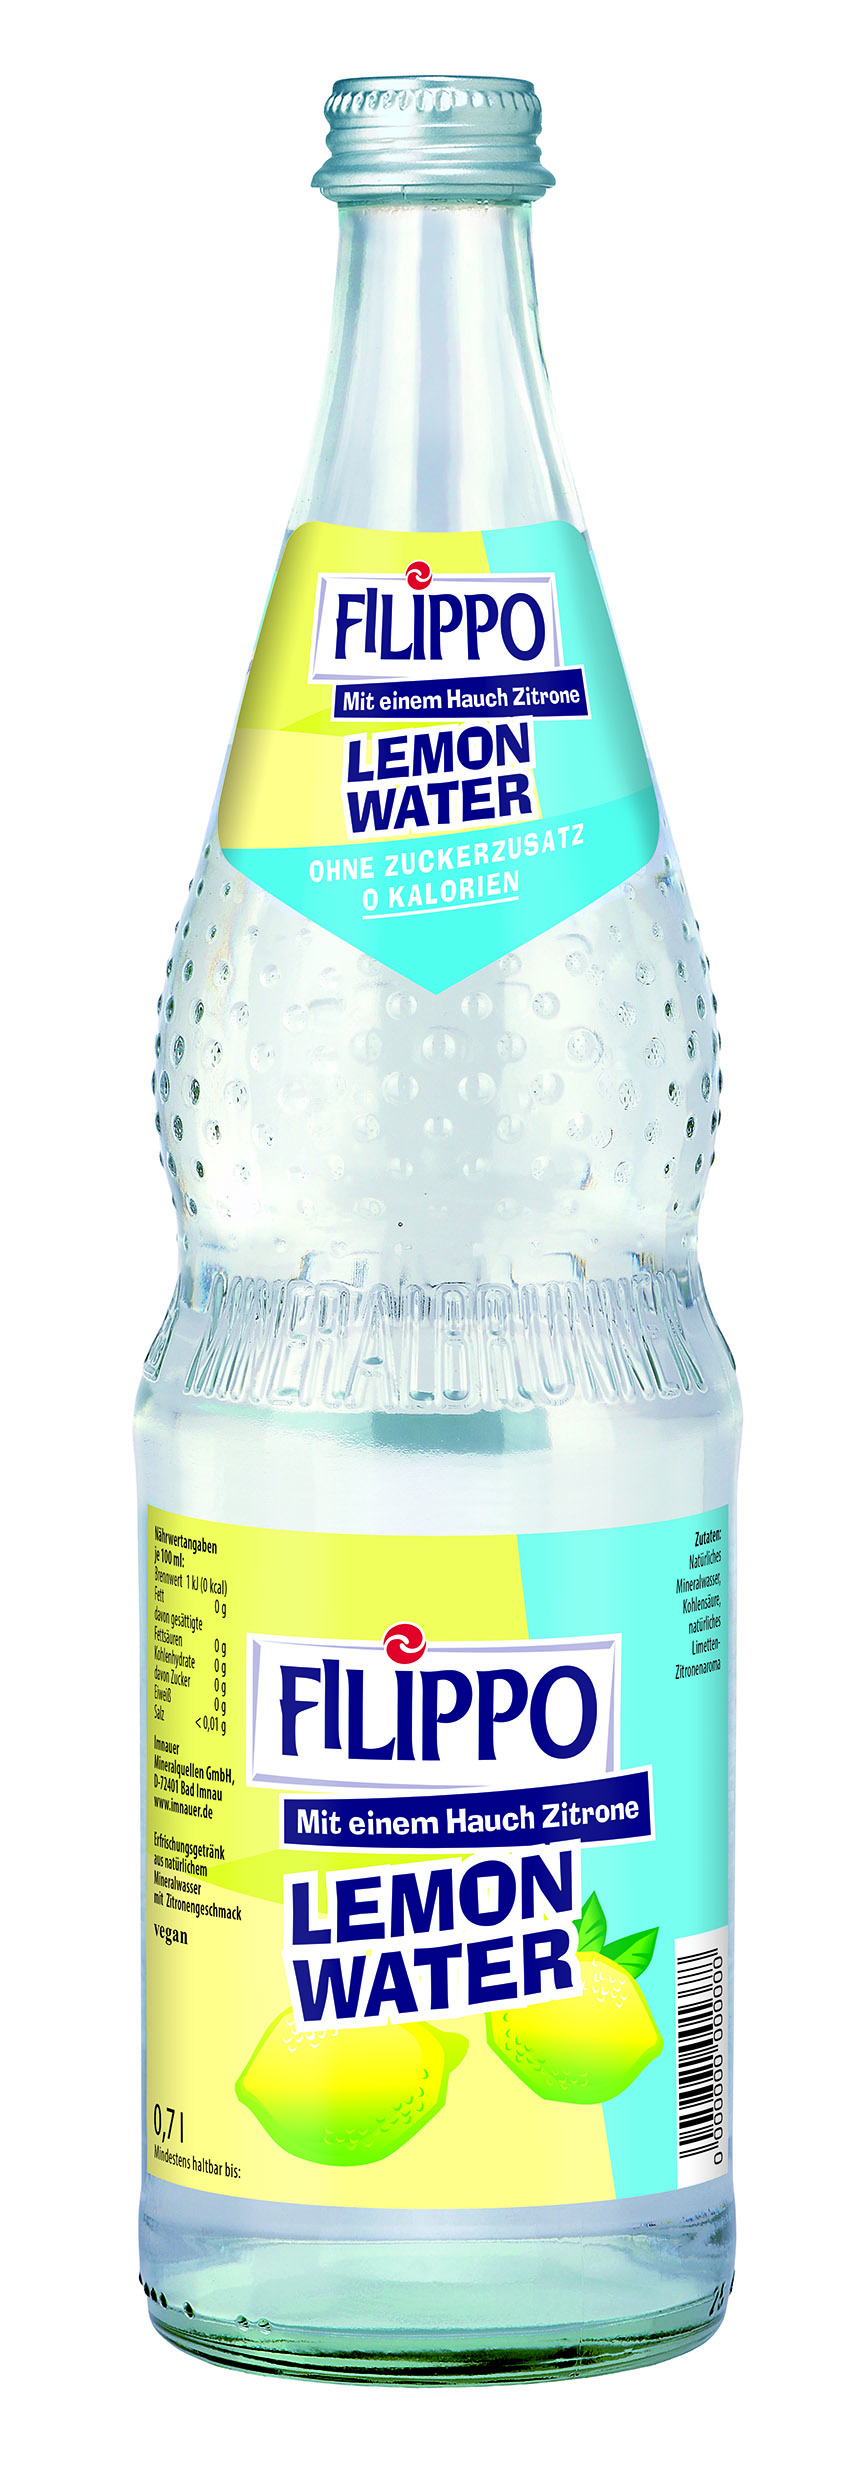 Filippo Lemon Water